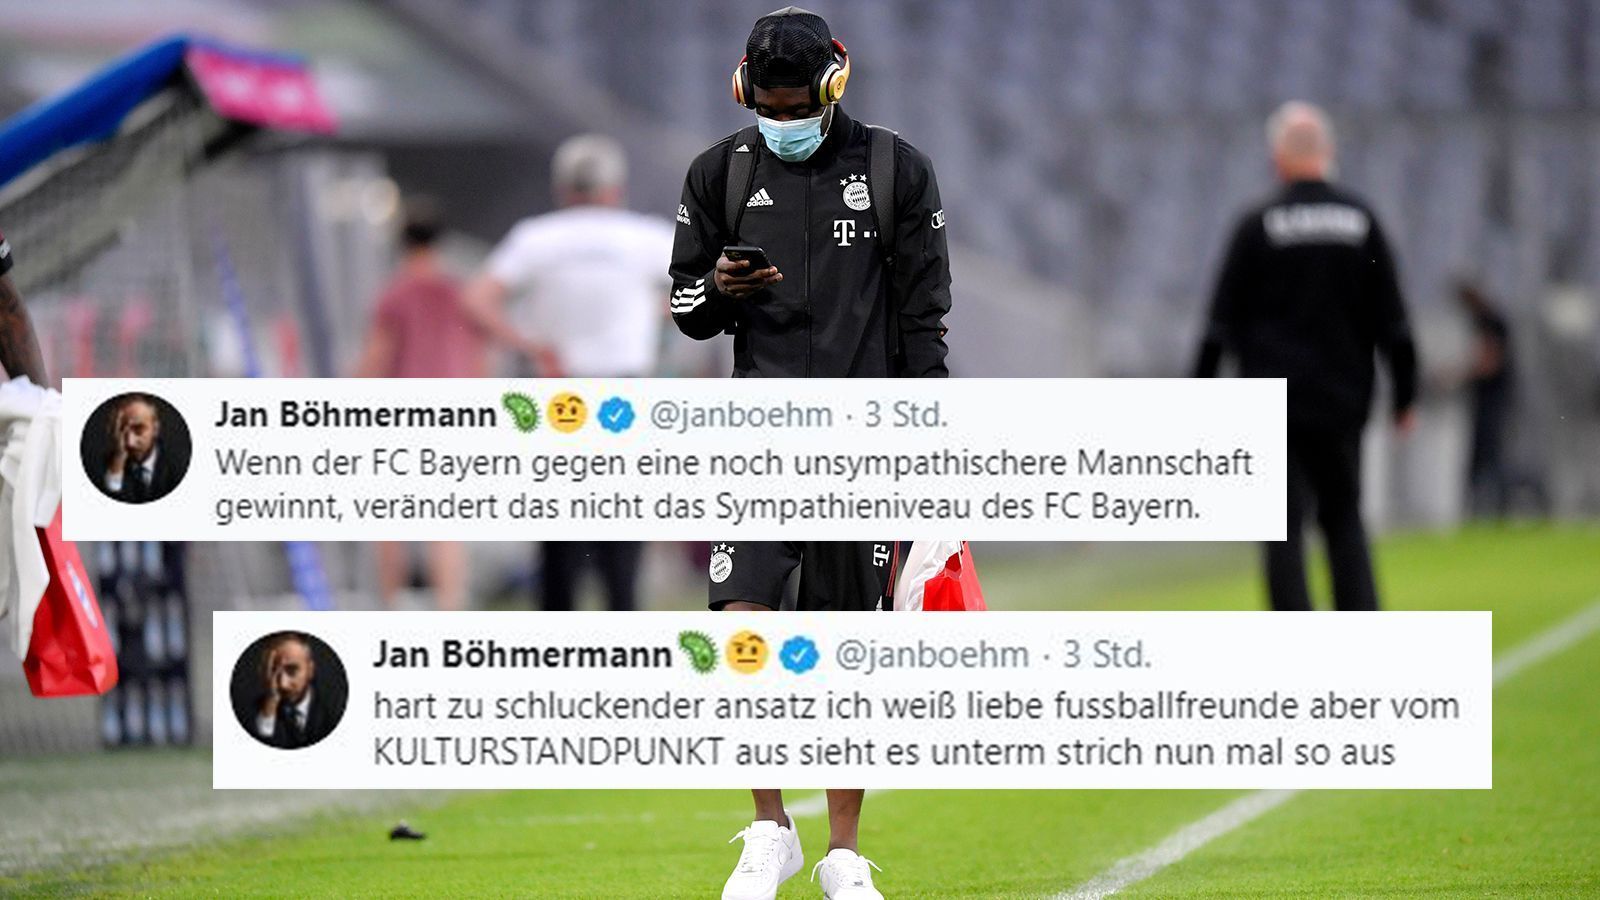 
                <strong>Bayern oder Paris? Für Böhmermann kaum ein Unterschied</strong><br>
                Kurz darauf geht es weiter - es entwickelt sich eine echte Tweetflut. Böhmermann scheint die Fußballromantik unter dem Einfluss der Geldgeber und Großsponsoren aus Fernost zu vermissen.
              